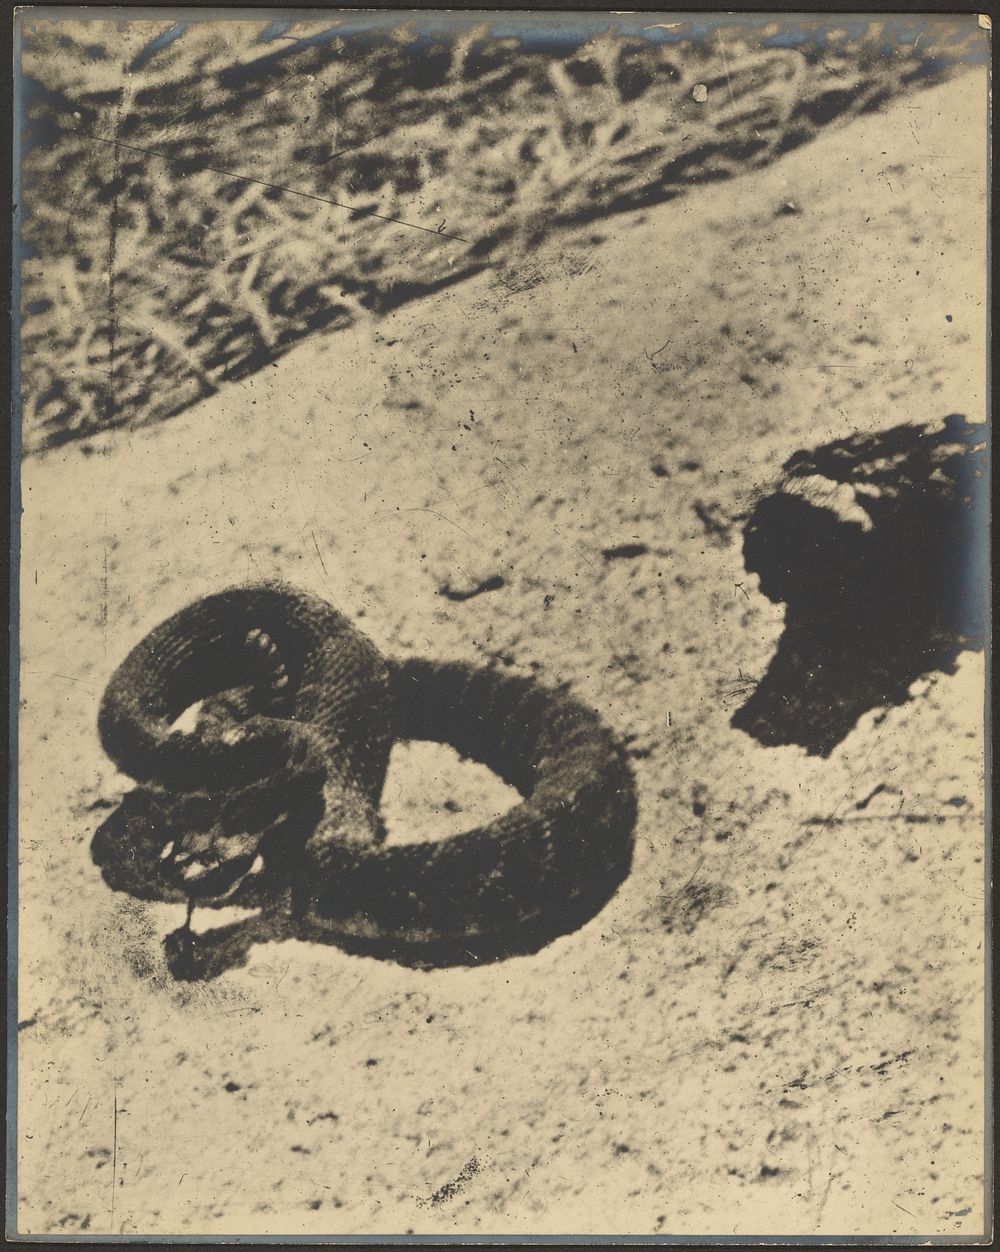 Rattlesnake by Louis Fleckenstein